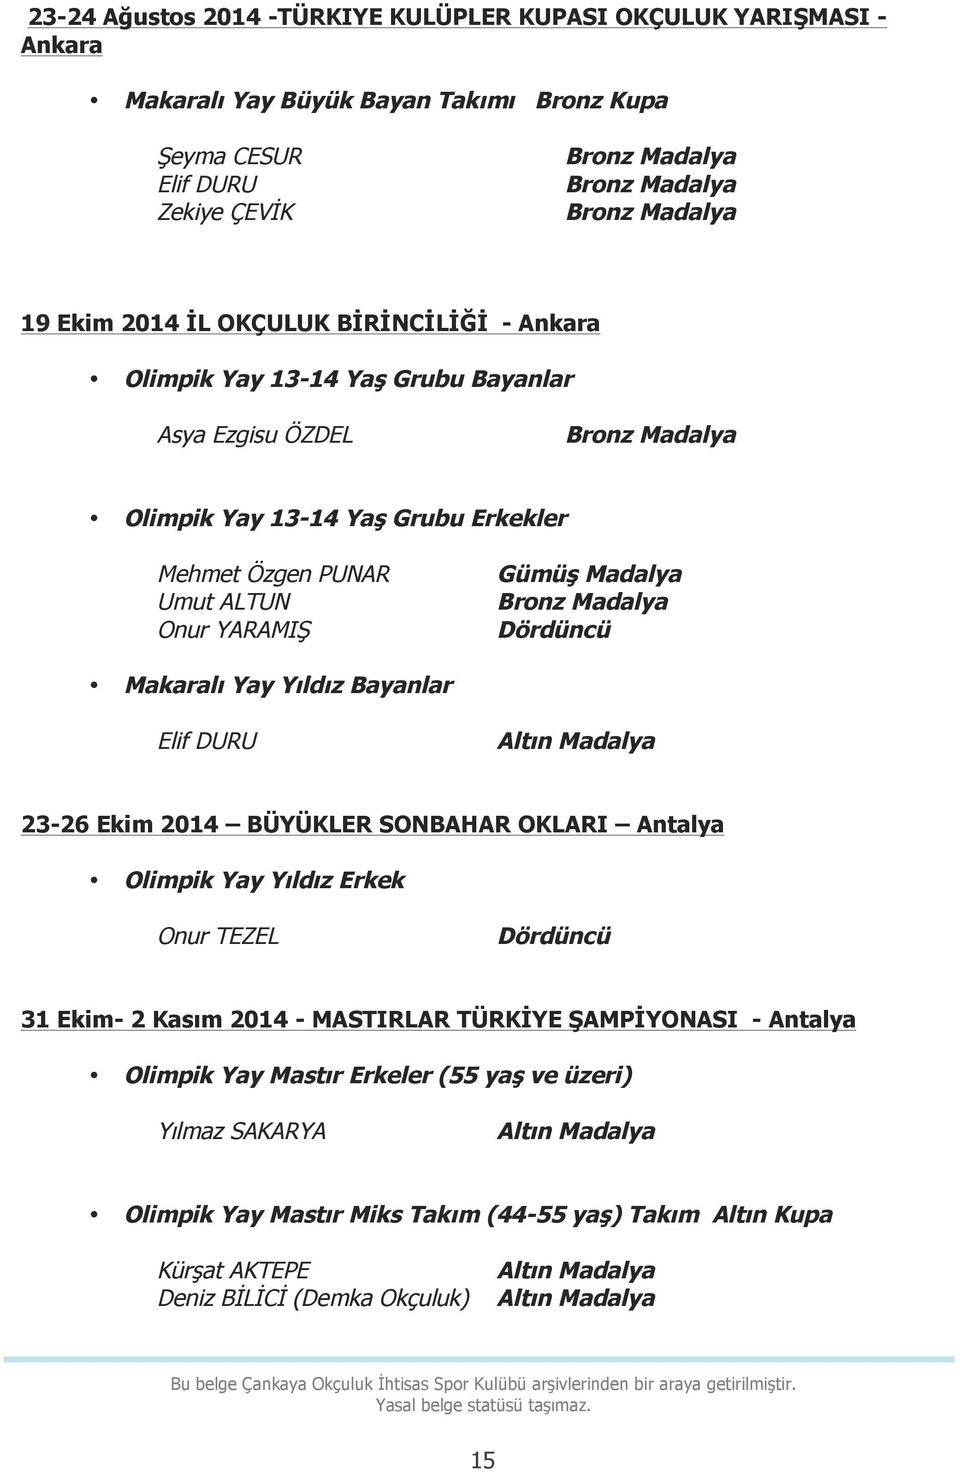 Yıldız Bayanlar Elif DURU 23-26 Ekim 2014 BÜYÜKLER SONBAHAR OKLARI Antalya Olimpik Yay Yıldız Erkek Onur TEZEL Dördüncü 31 Ekim- 2 Kasım 2014 - MASTIRLAR TÜRKİYE